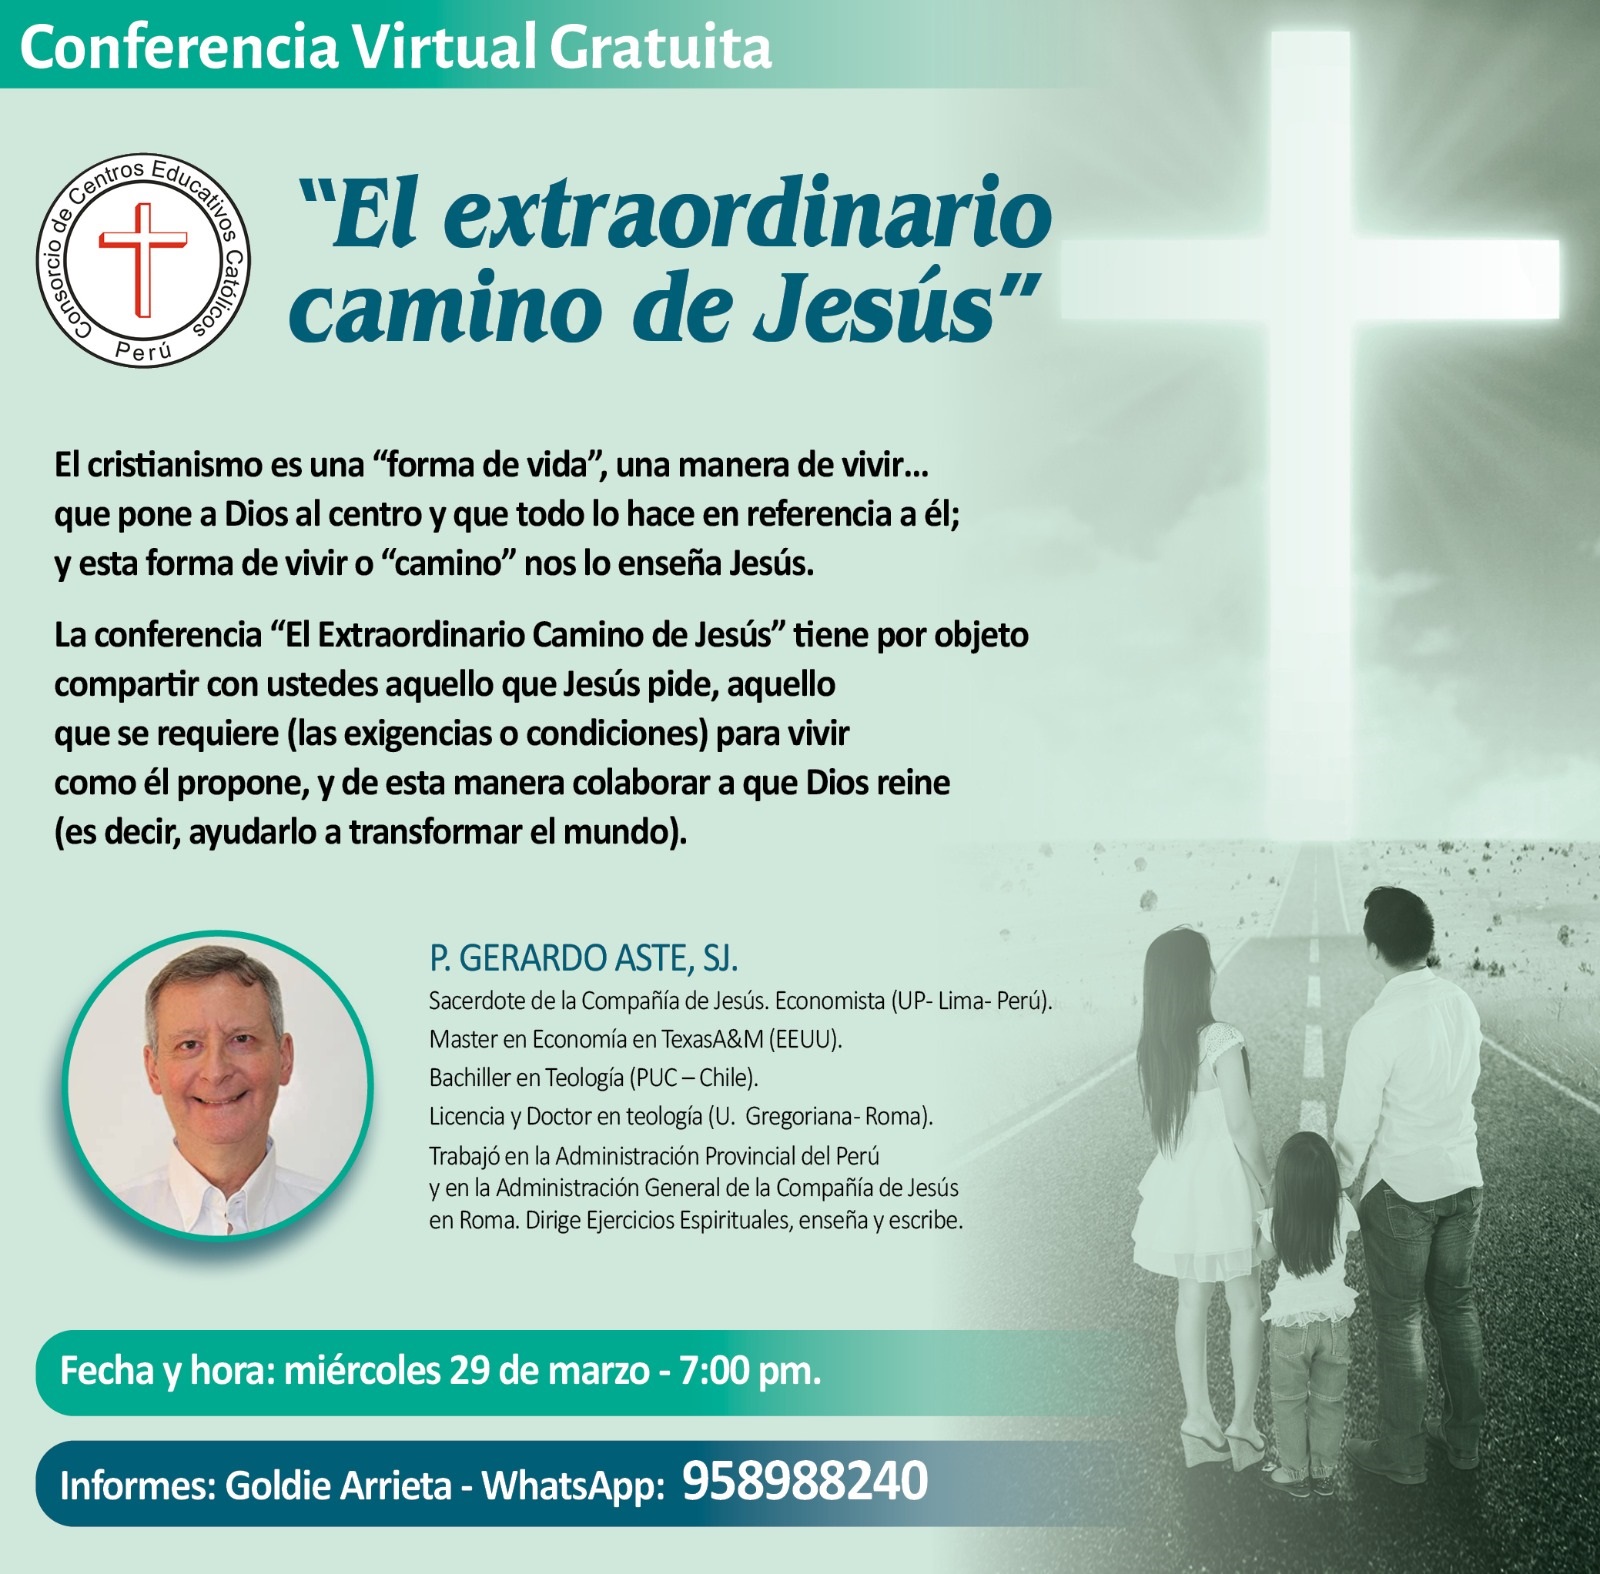 Conferencia Virtual Gratuita: "EL EXTRAORDINARIO CAMINO DE JESÚS"